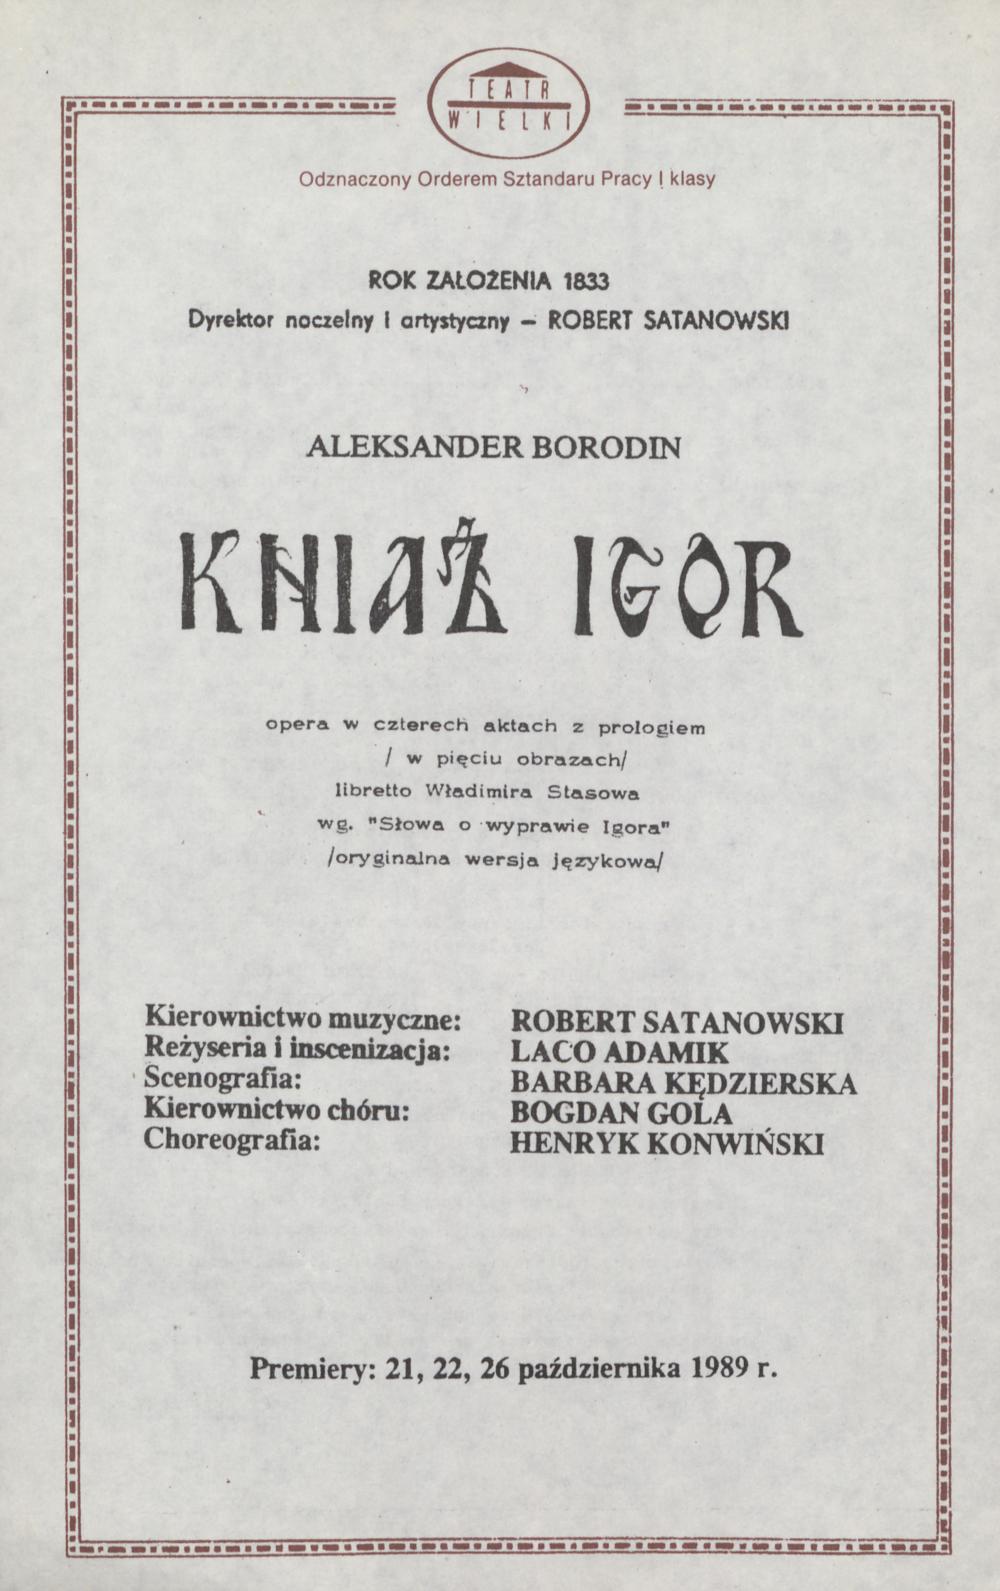 Wkładka obsadowa „Kniaź Igor” Aleksander Borodin 17-02-1990